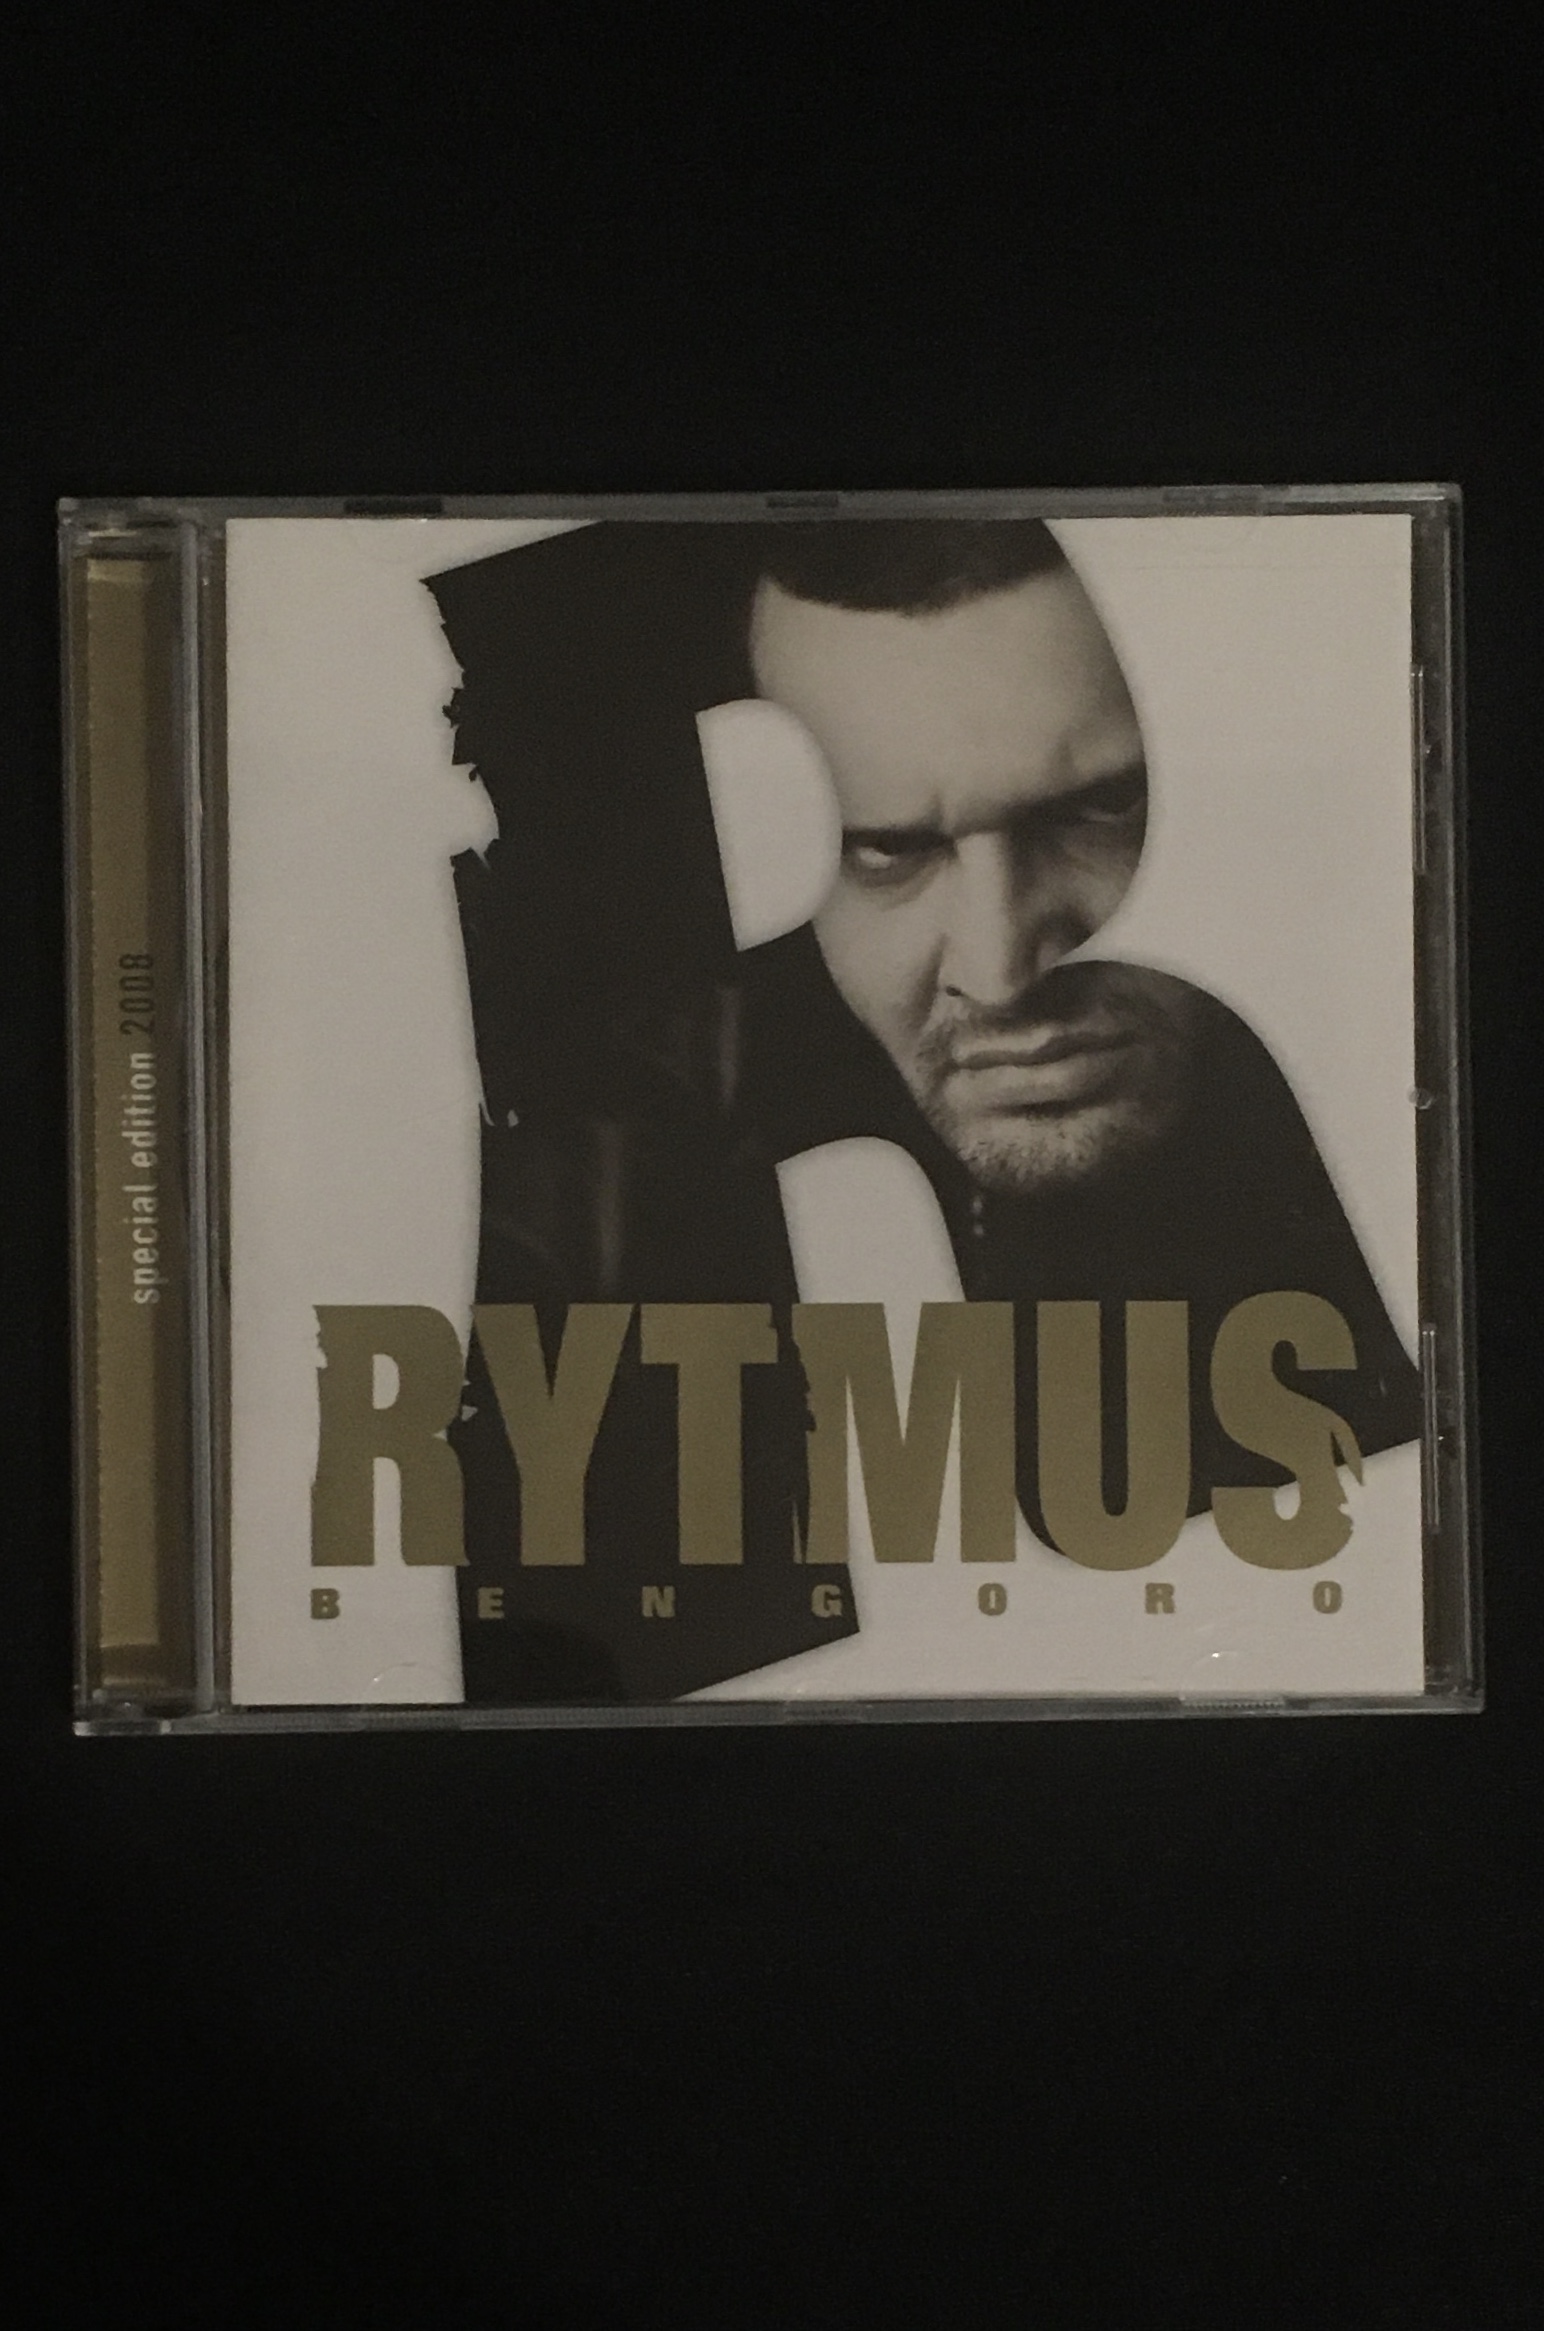 Rytmus-Bengoro